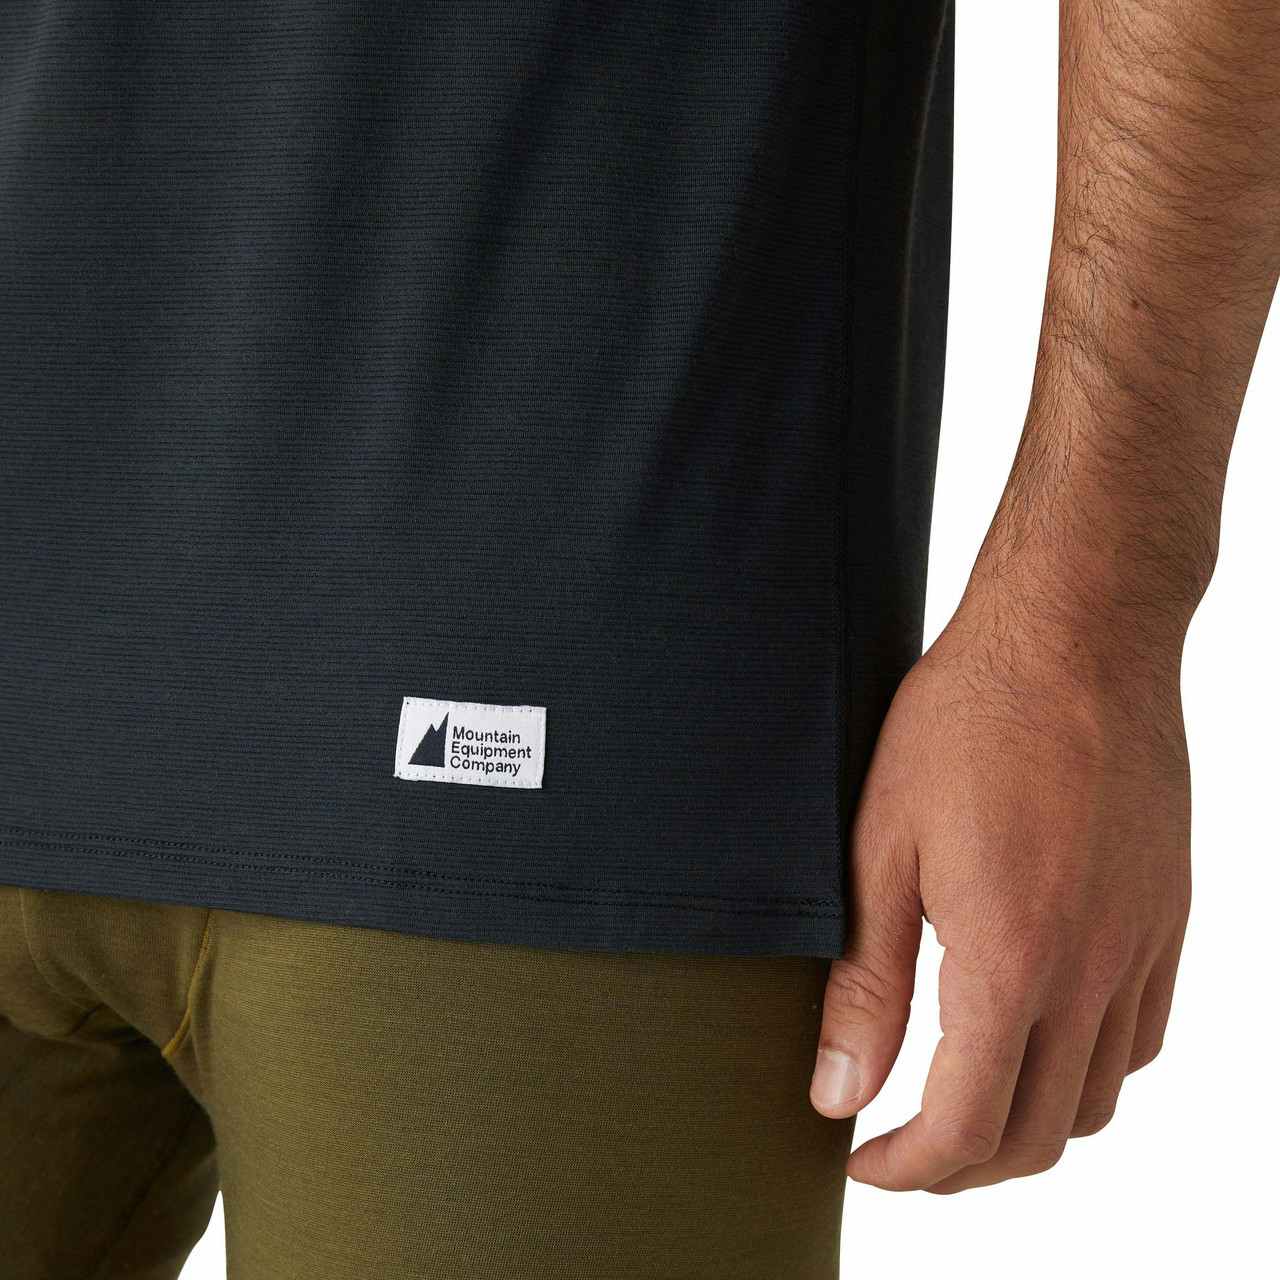 T-shirt de couche de base en laine mérinos T1 Noir